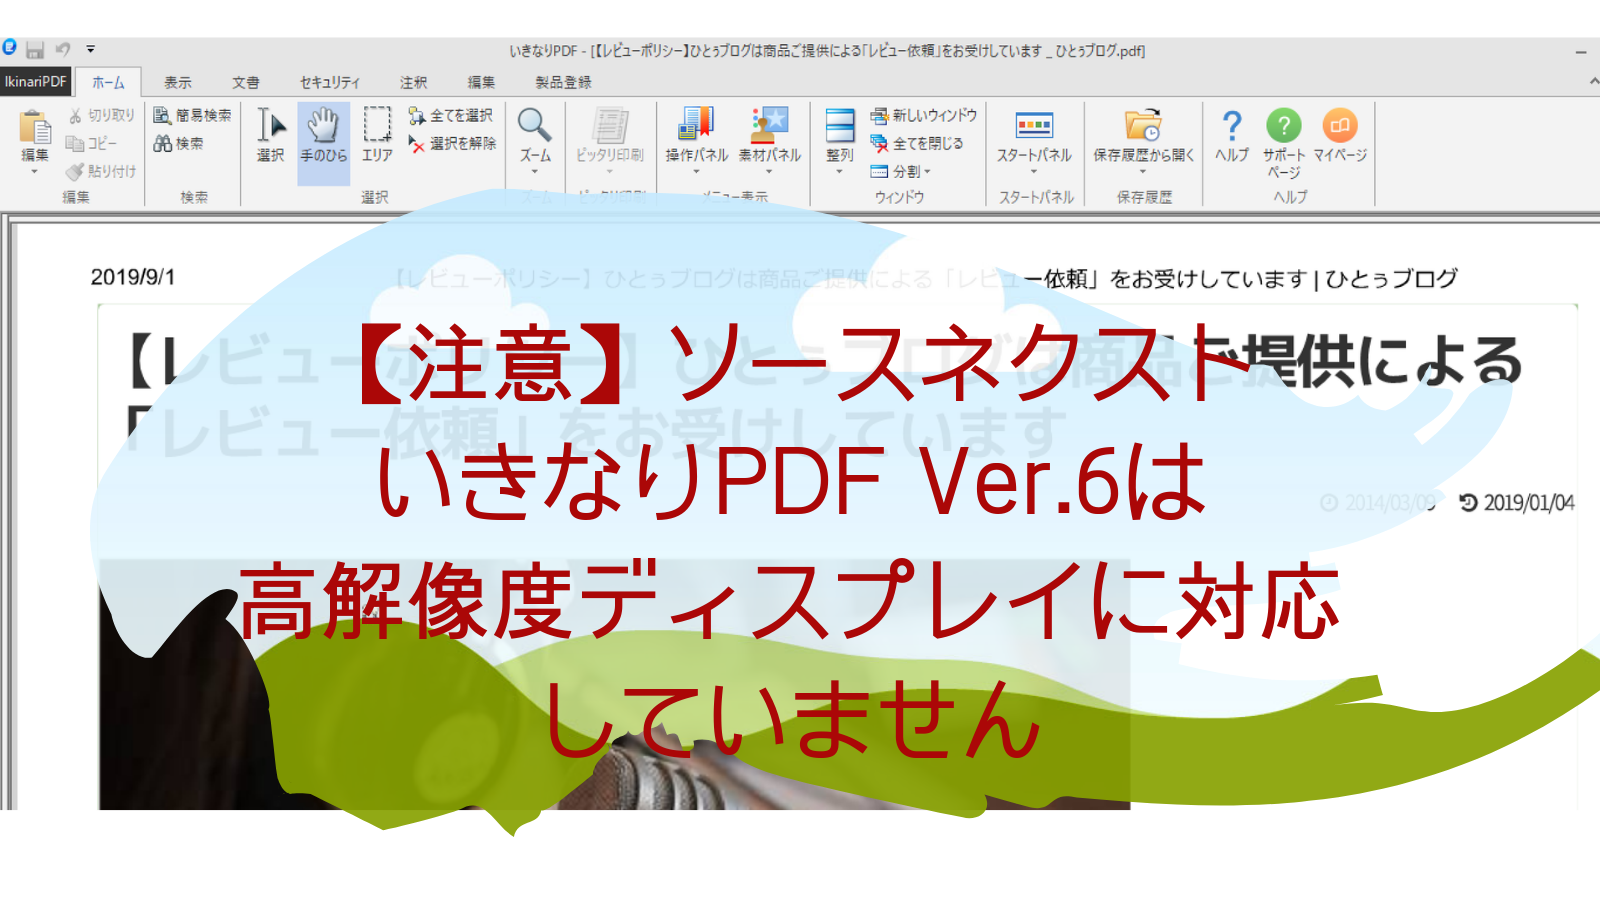 要注意 いきなりpdf Ver 6は高解像度ディスプレイに対応していない ひとぅブログ